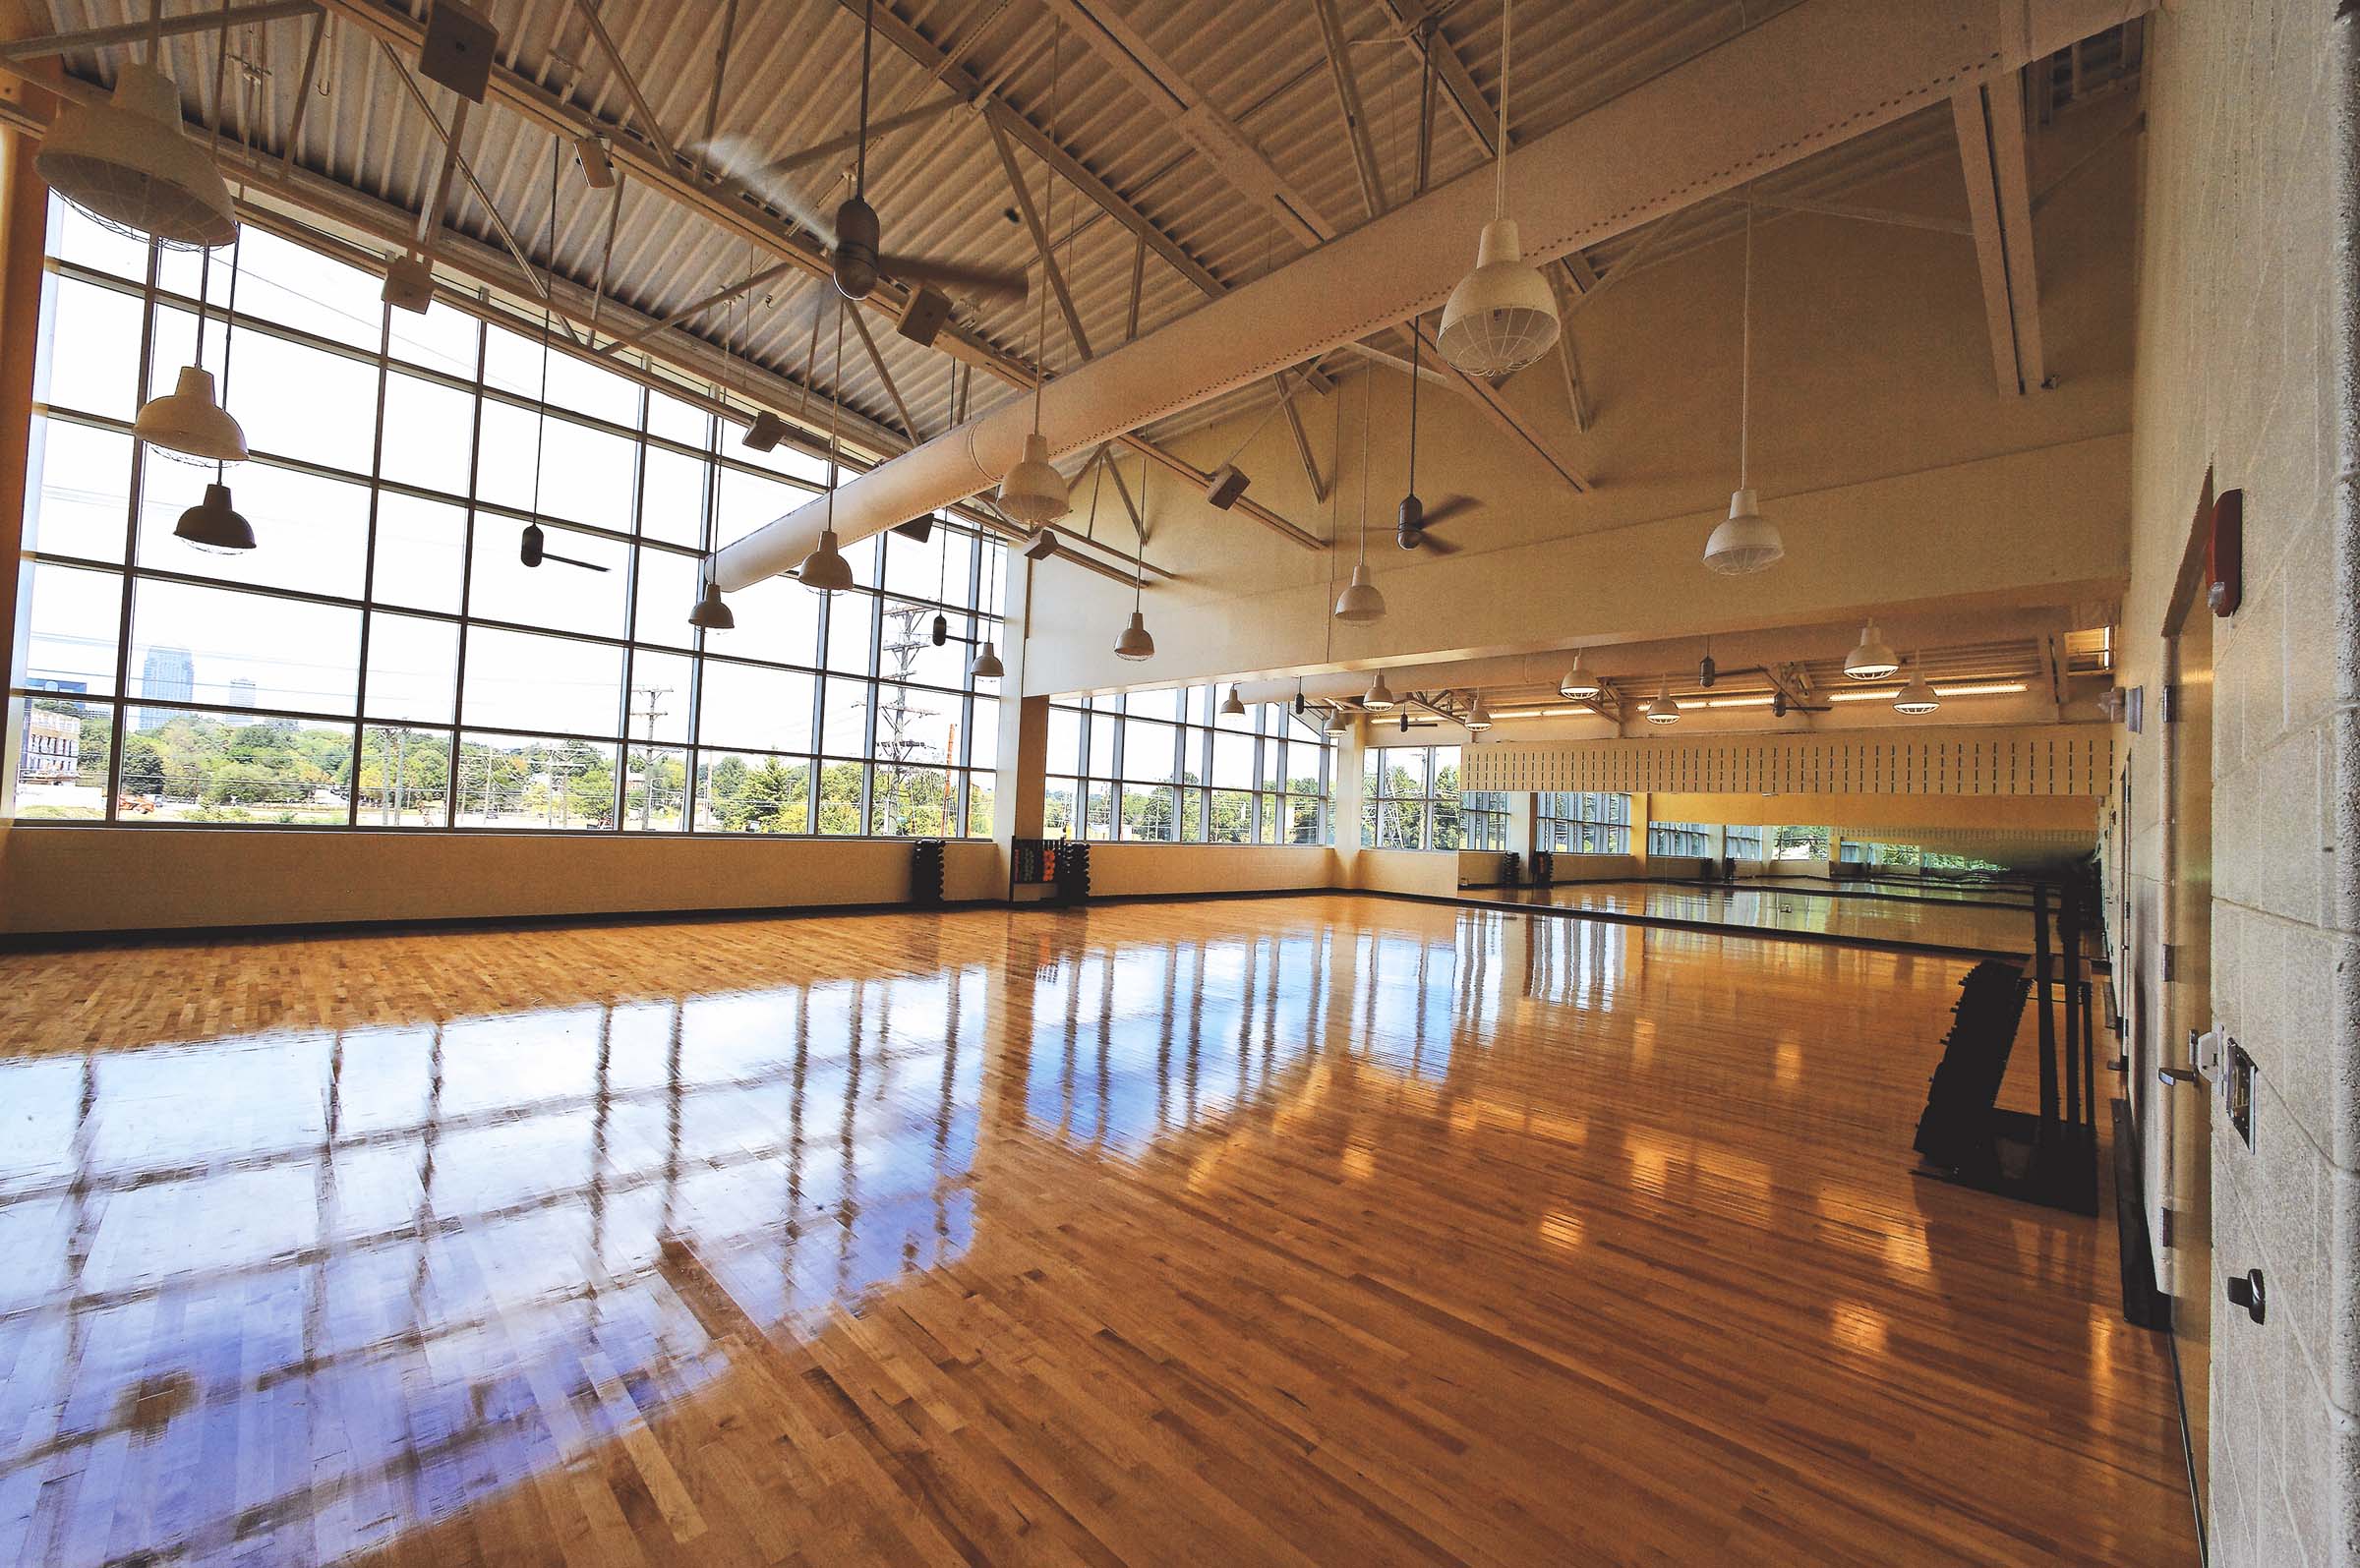 YWCA Gateway Sports & Wellness Center photo 4 of 6